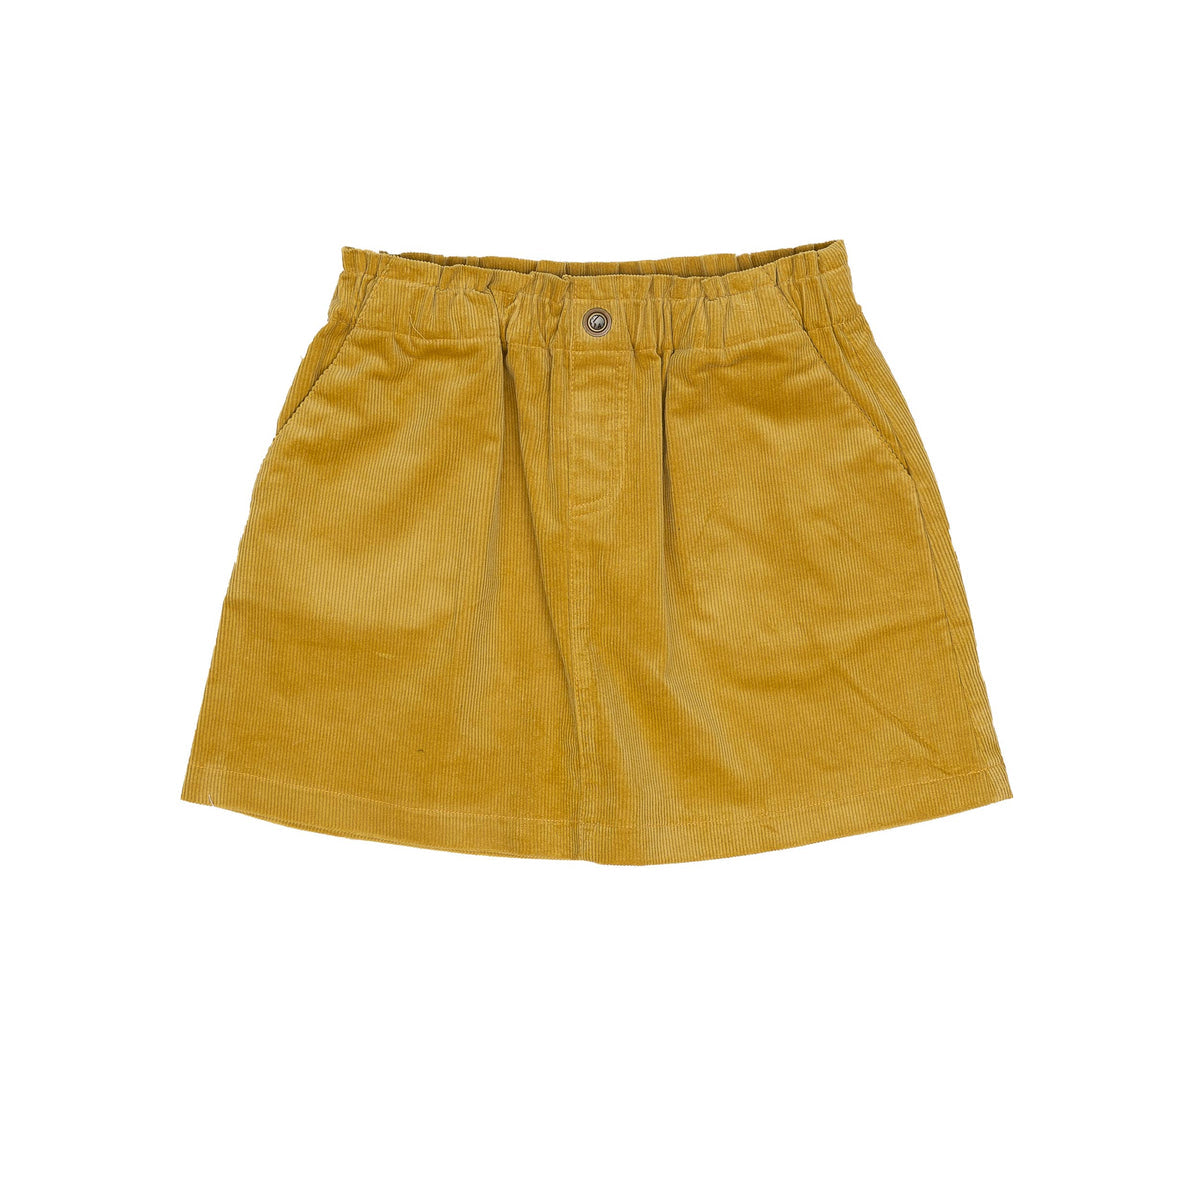 Leigh Mustard Cord Skirt